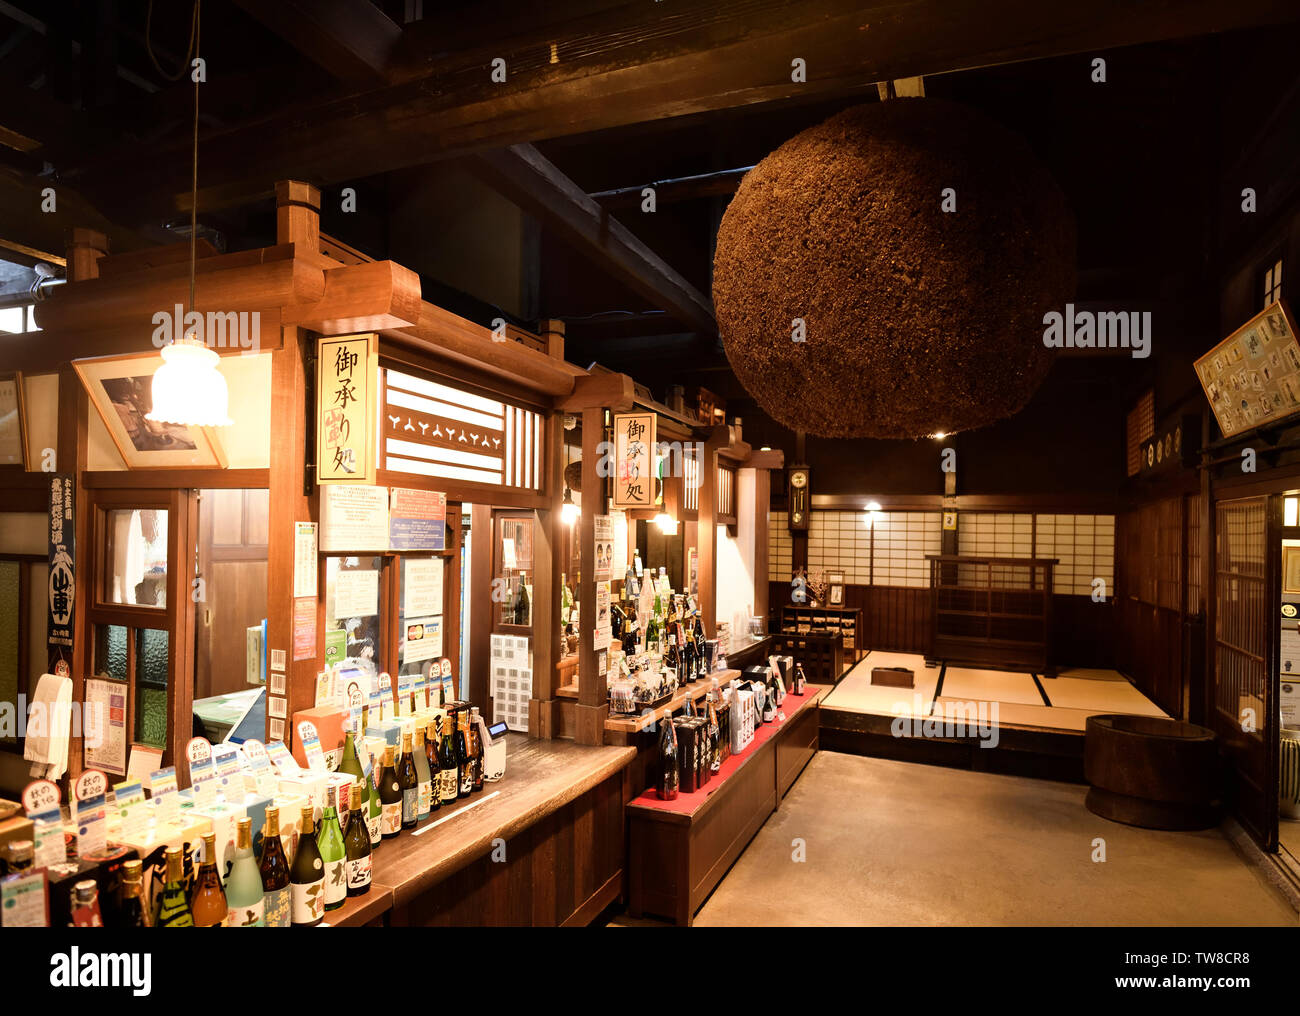 Sake Brauerei Shop Interior in der Altstadt der Stadt Takayama mit Sugidama, braun Zeder Kugel, innen hängen. Takayama, Präfektur Gifu, Japan Stockfoto